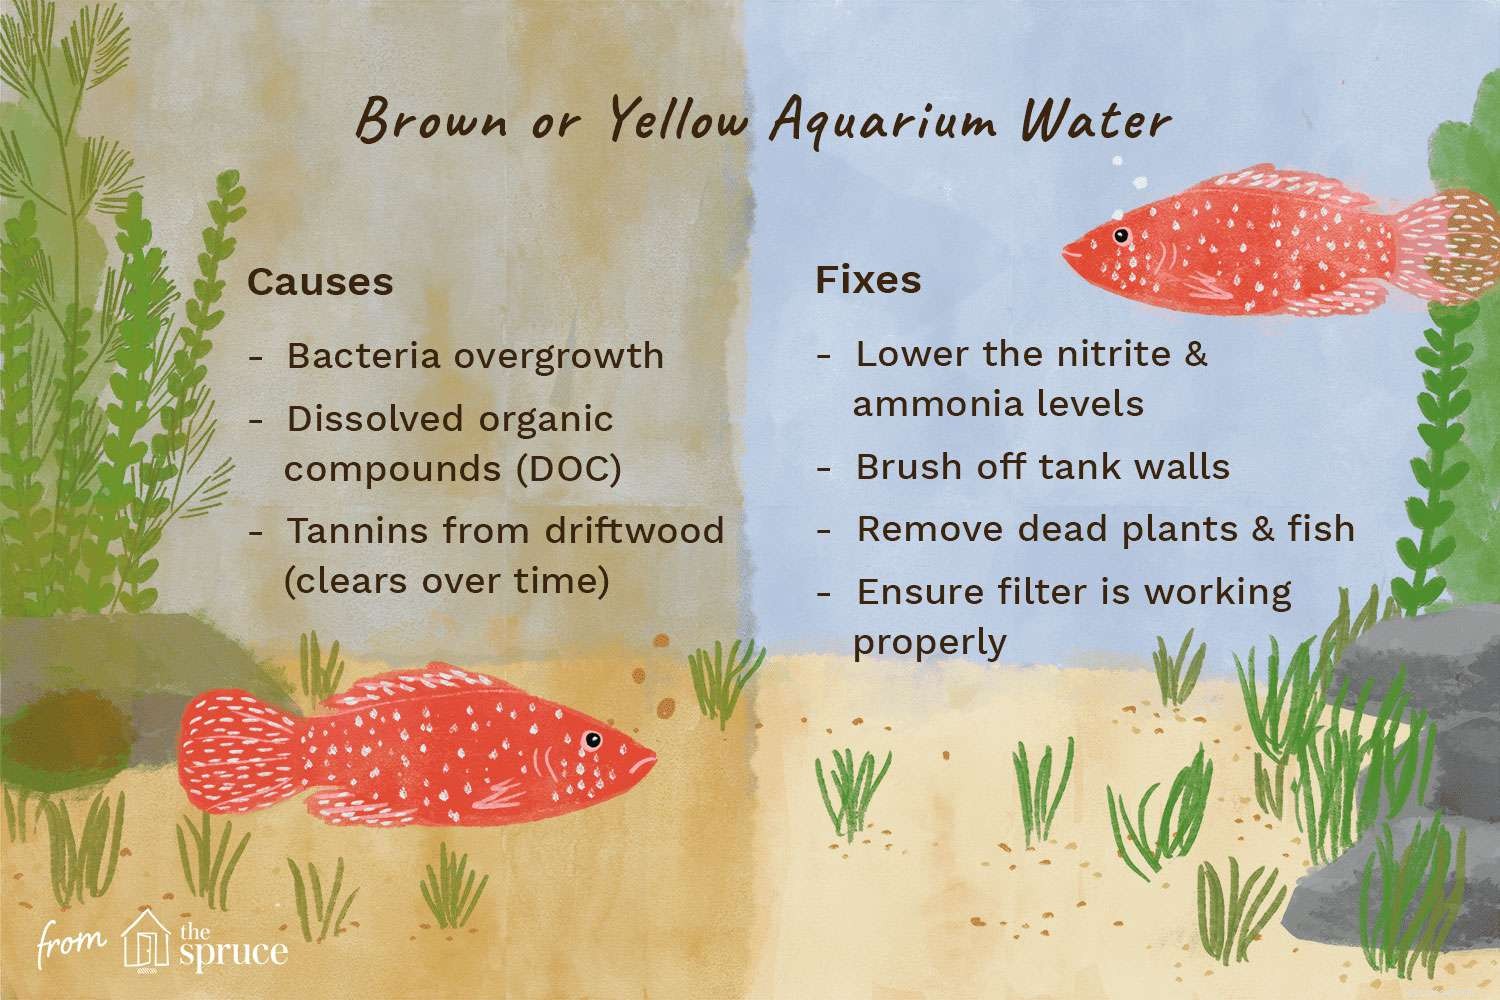 Causes et solutions pour l eau d aquarium jaune ou brune